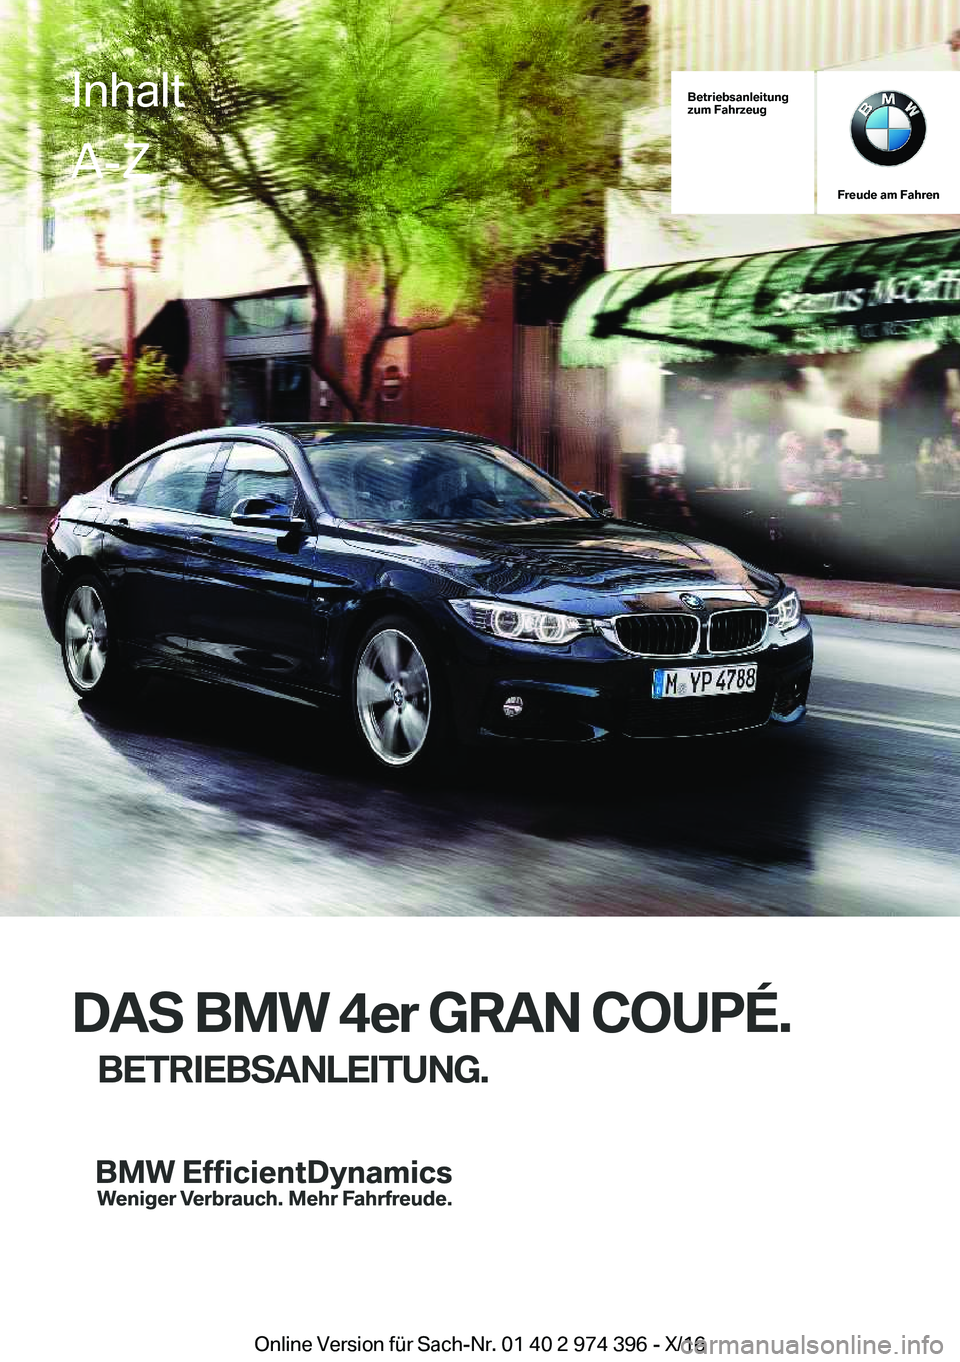 BMW 4 SERIES GRAN COUPE 2017  Betriebsanleitungen (in German) �B�e�t�r�i�e�b�s�a�n�l�e�i�t�u�n�g
�z�u�m��F�a�h�r�z�e�u�g
�F�r�e�u�d�e��a�m��F�a�h�r�e�n
�D�A�S��B�M�W��4�e�r��G�R�A�N��C�O�U�P�